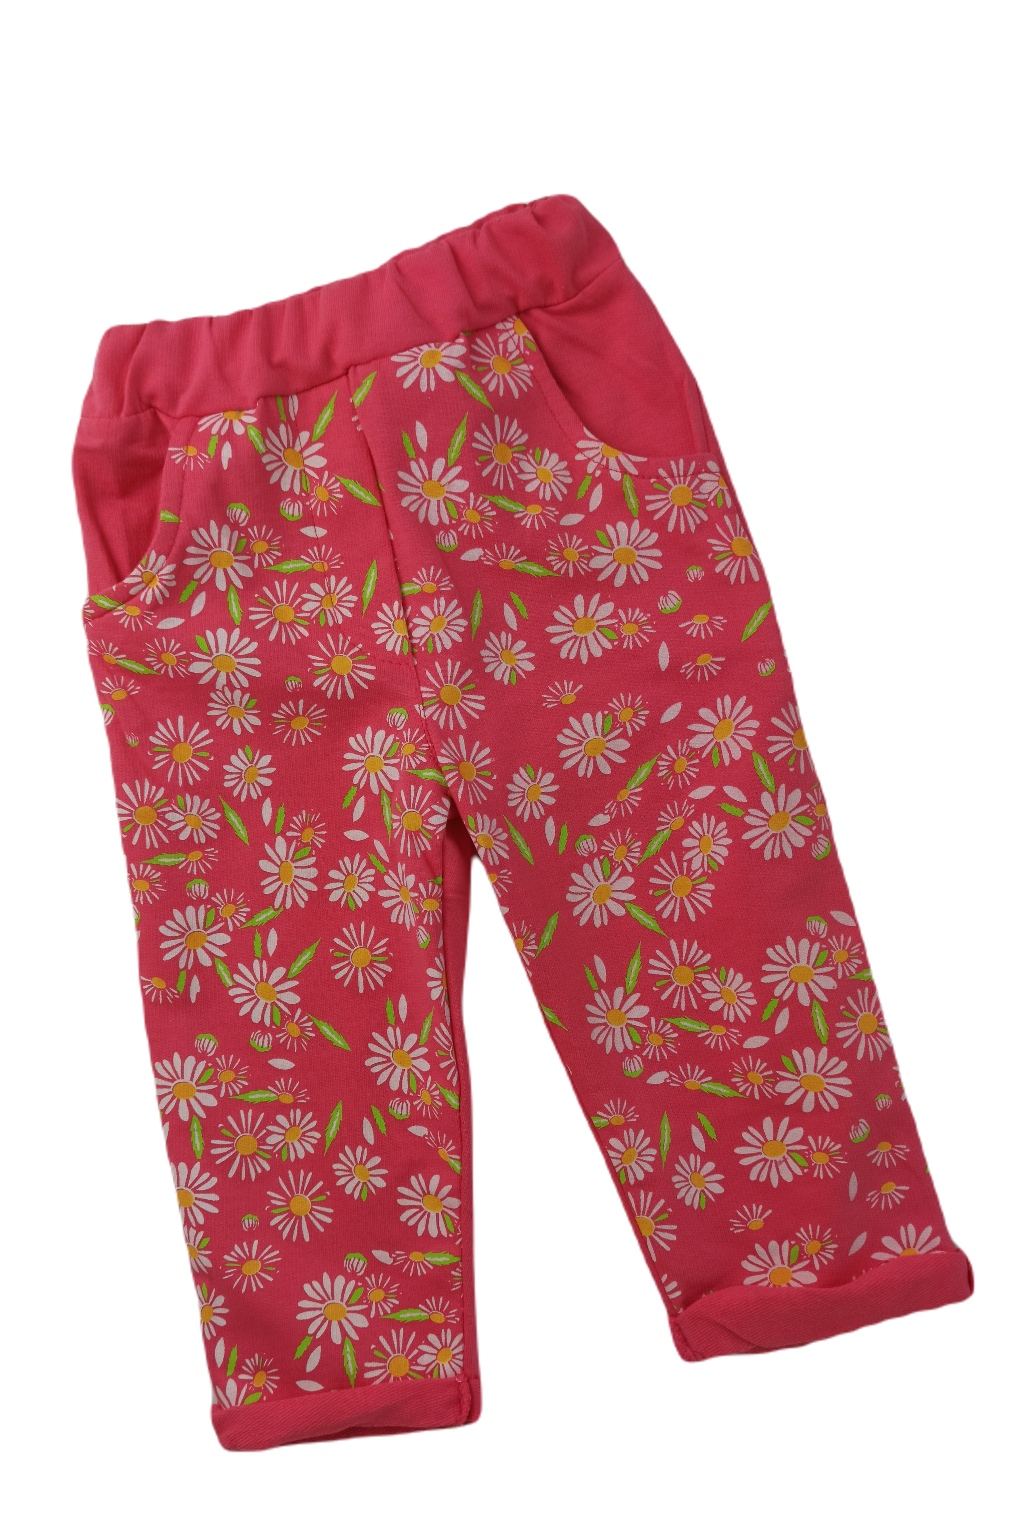 Dívčí kalhoty Květiny, fuchsiová, 100% bavlna Velikost: 62